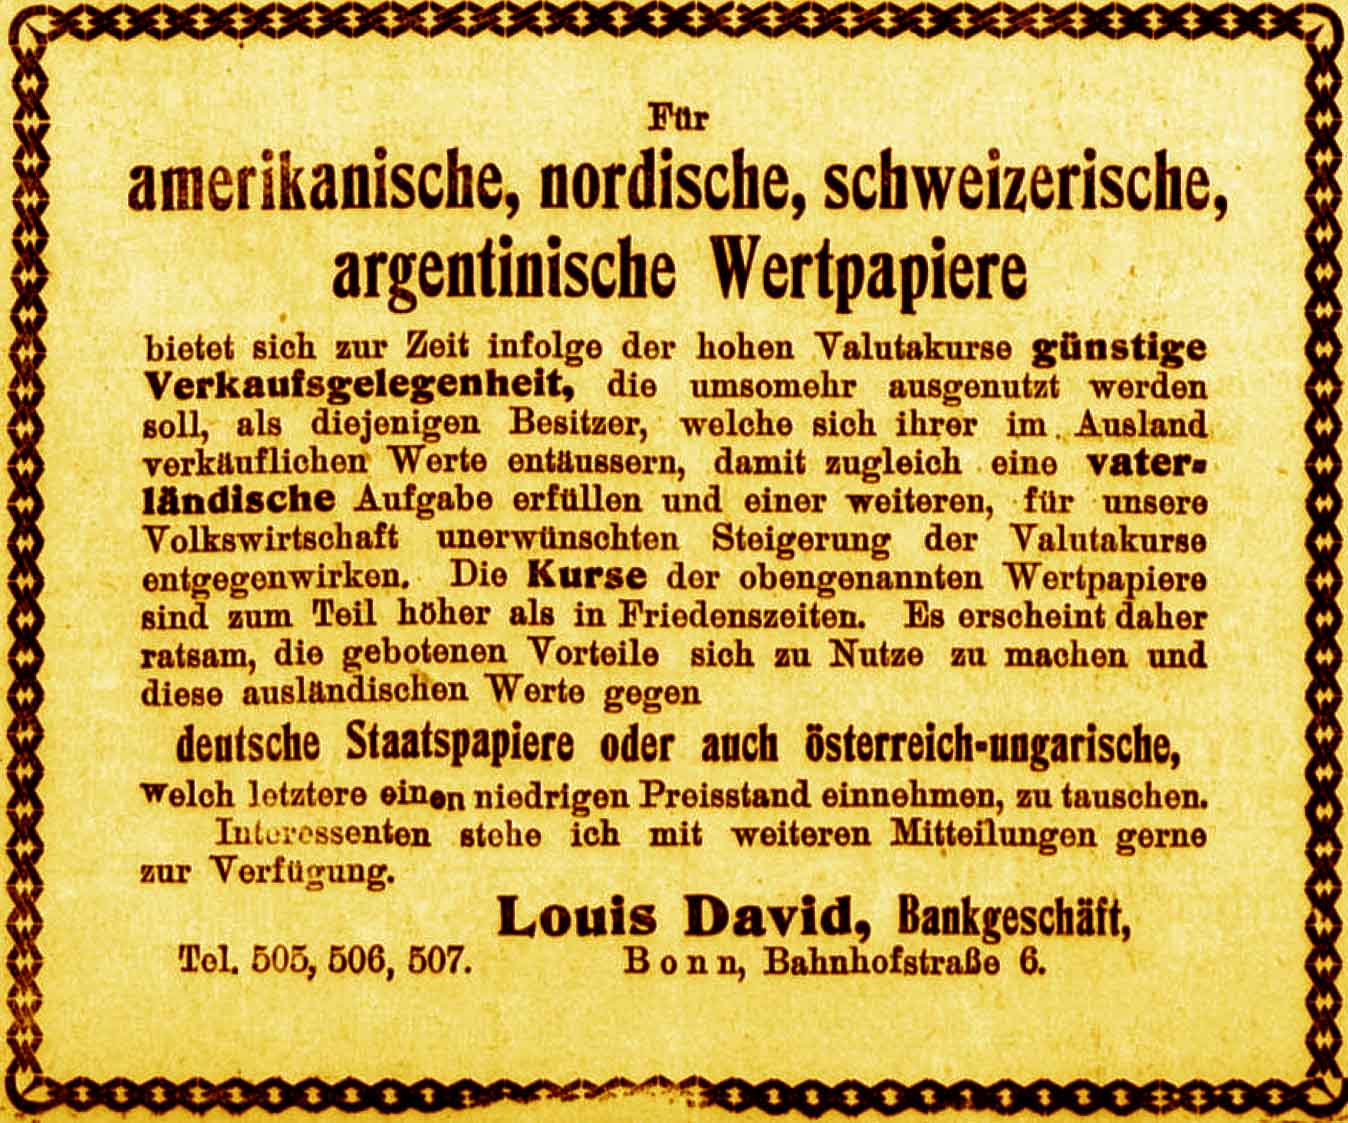 Anzeige im General-Anzeiger vom 20. Juli 1915